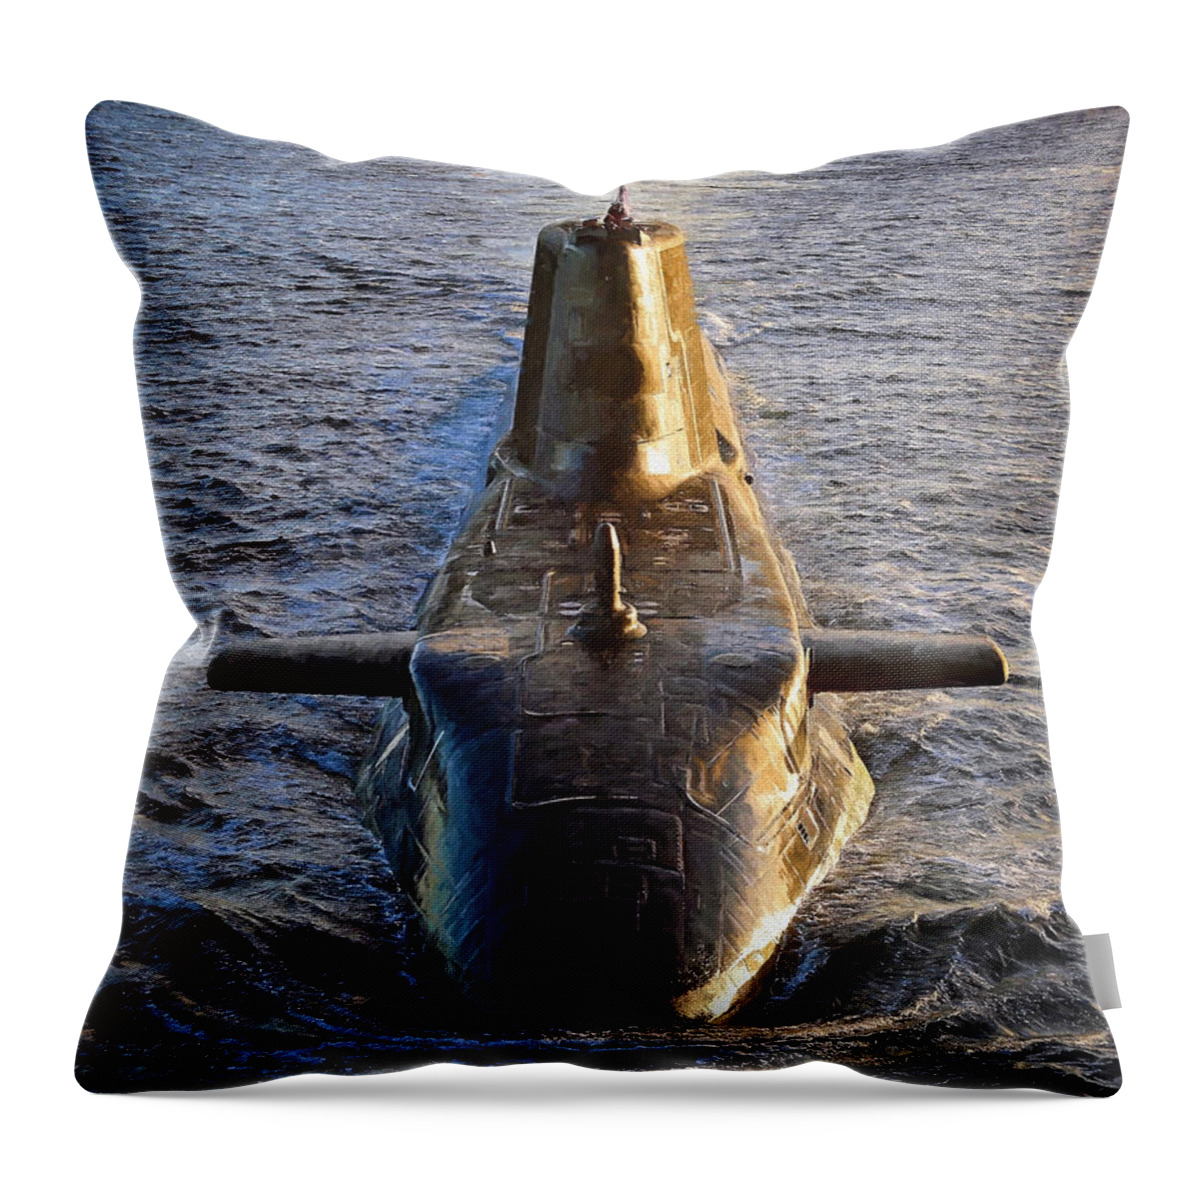 Astute Class Throw Pillow featuring the digital art Astute Class Submarine by Roy Pedersen